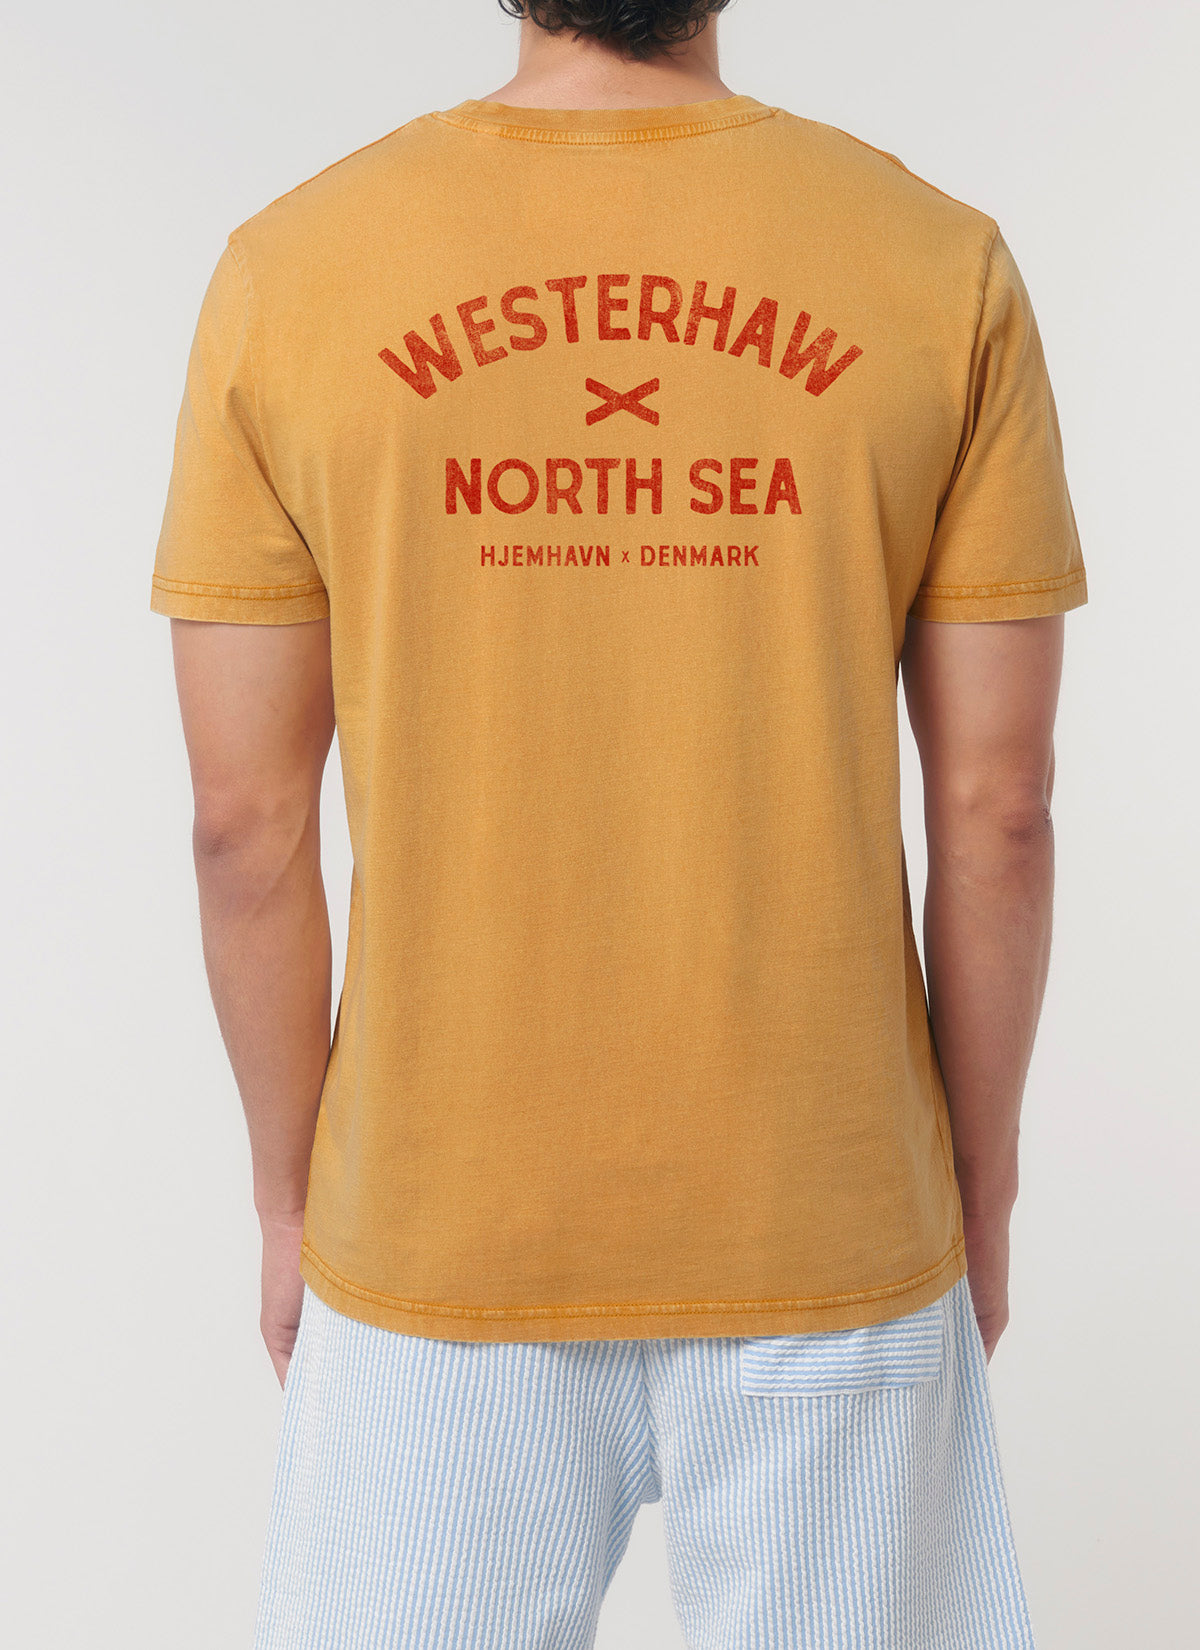 Tee "Westerhaw - North Sea"